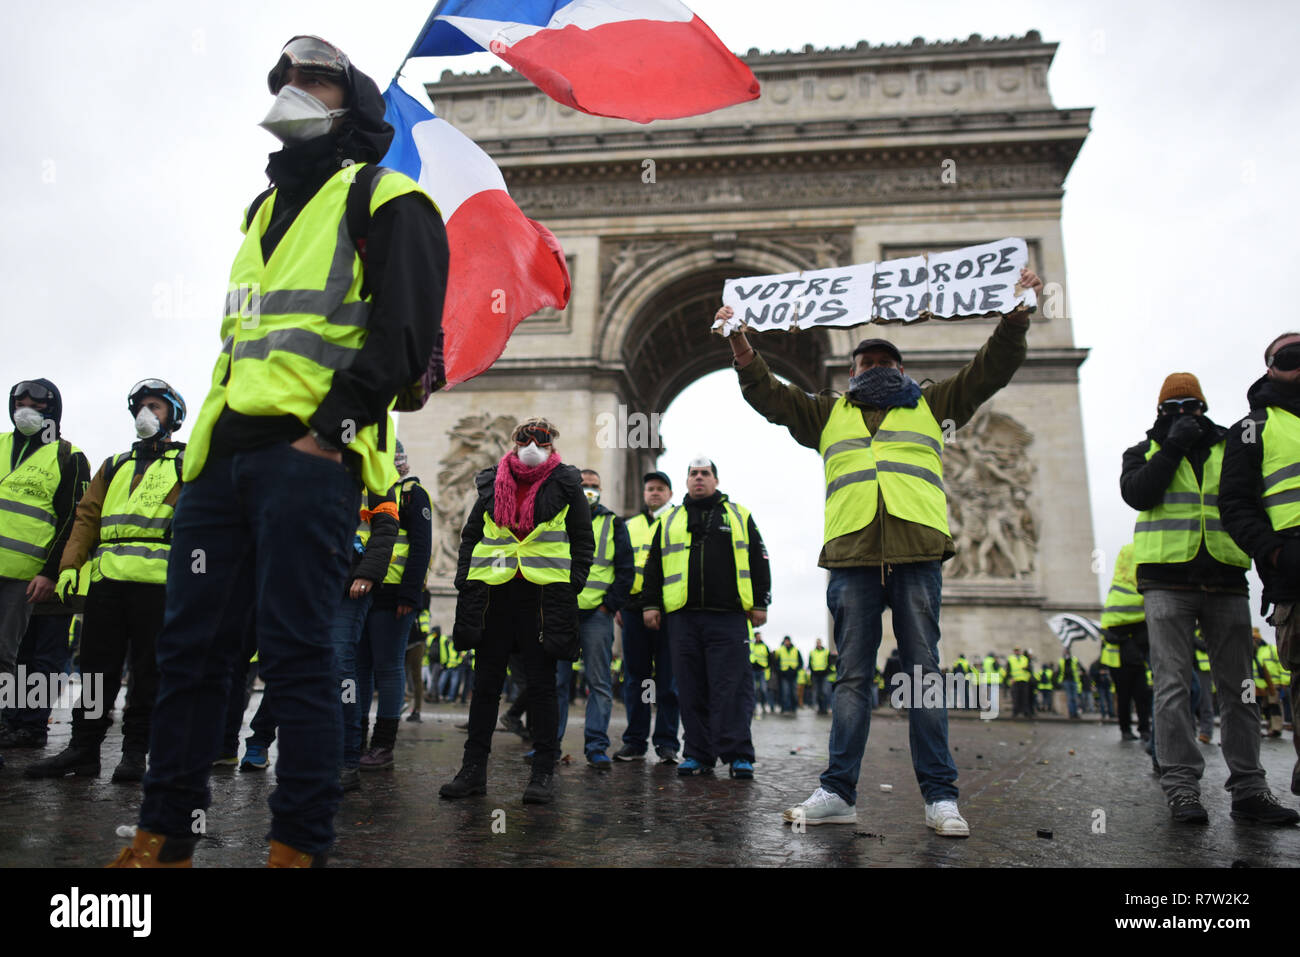 Décembre 01, 2018 - Paris, France : un gilet jaune manifestant, Marc (R),  est titulaire d'une bannière "Votre Europe est de ruiner nous' au cours  d'affrontements près de l'Arc de Triomphe à